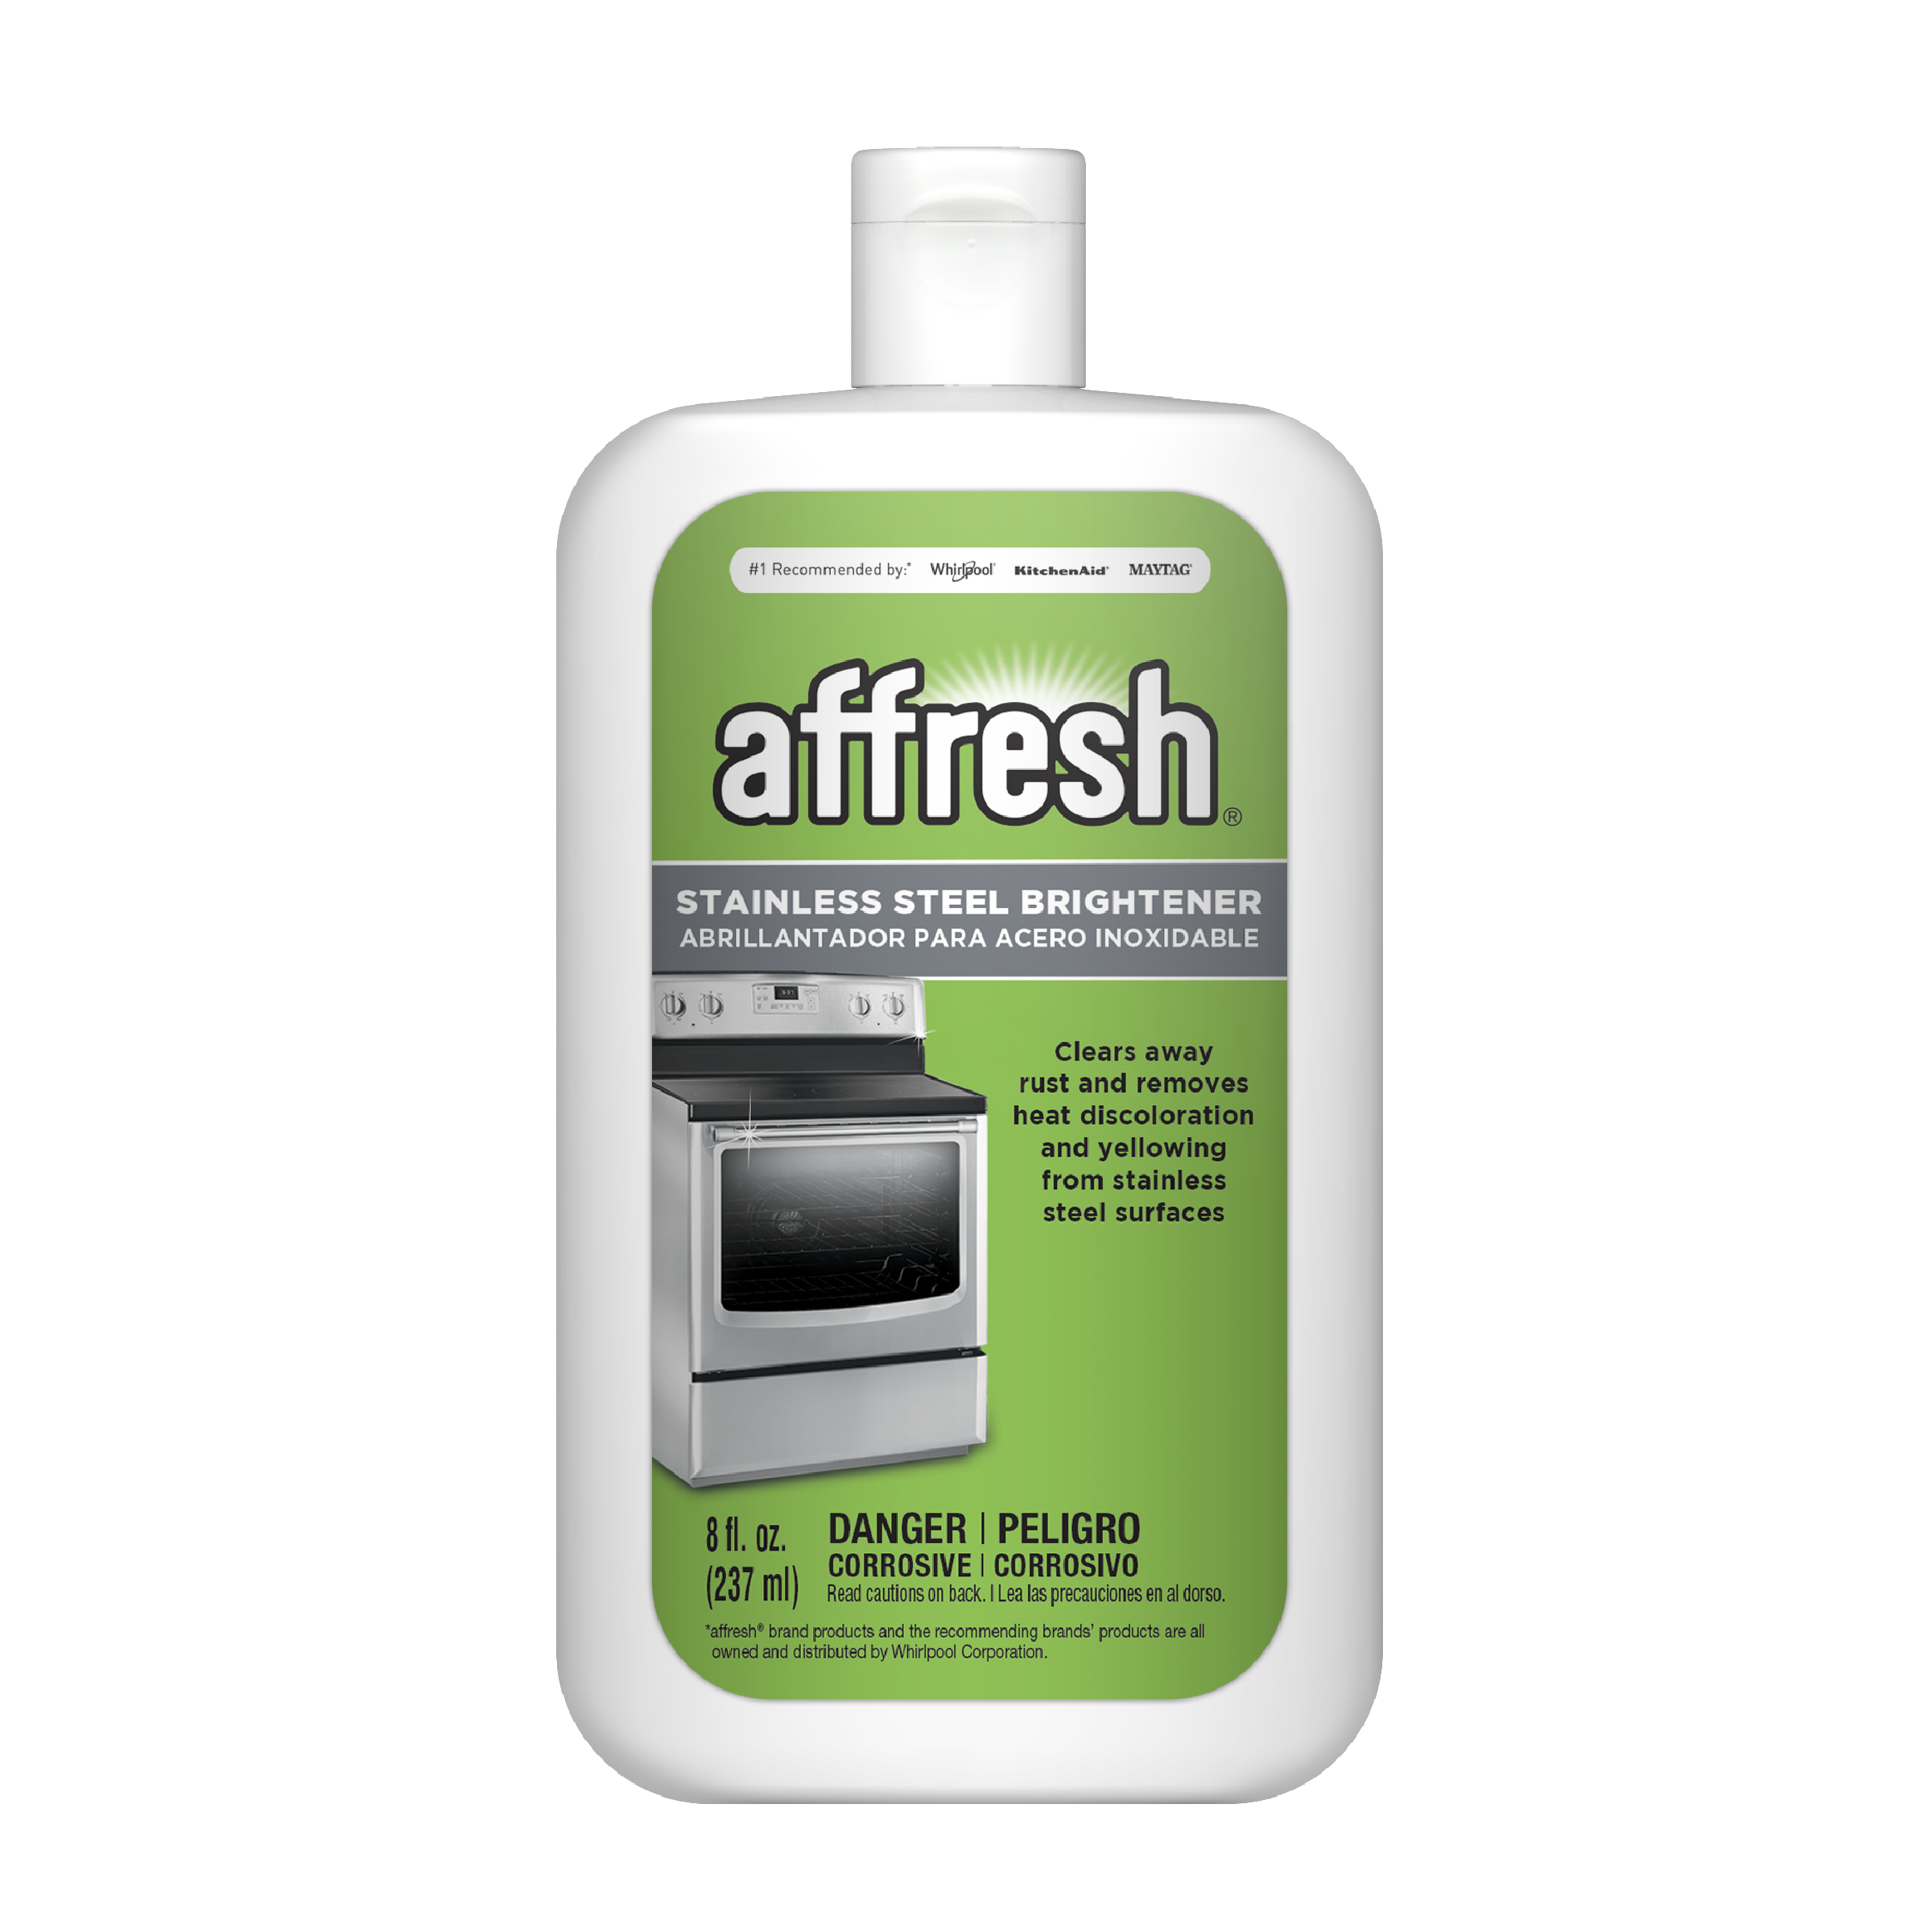 Affresh Products - Merrithew's Appliances